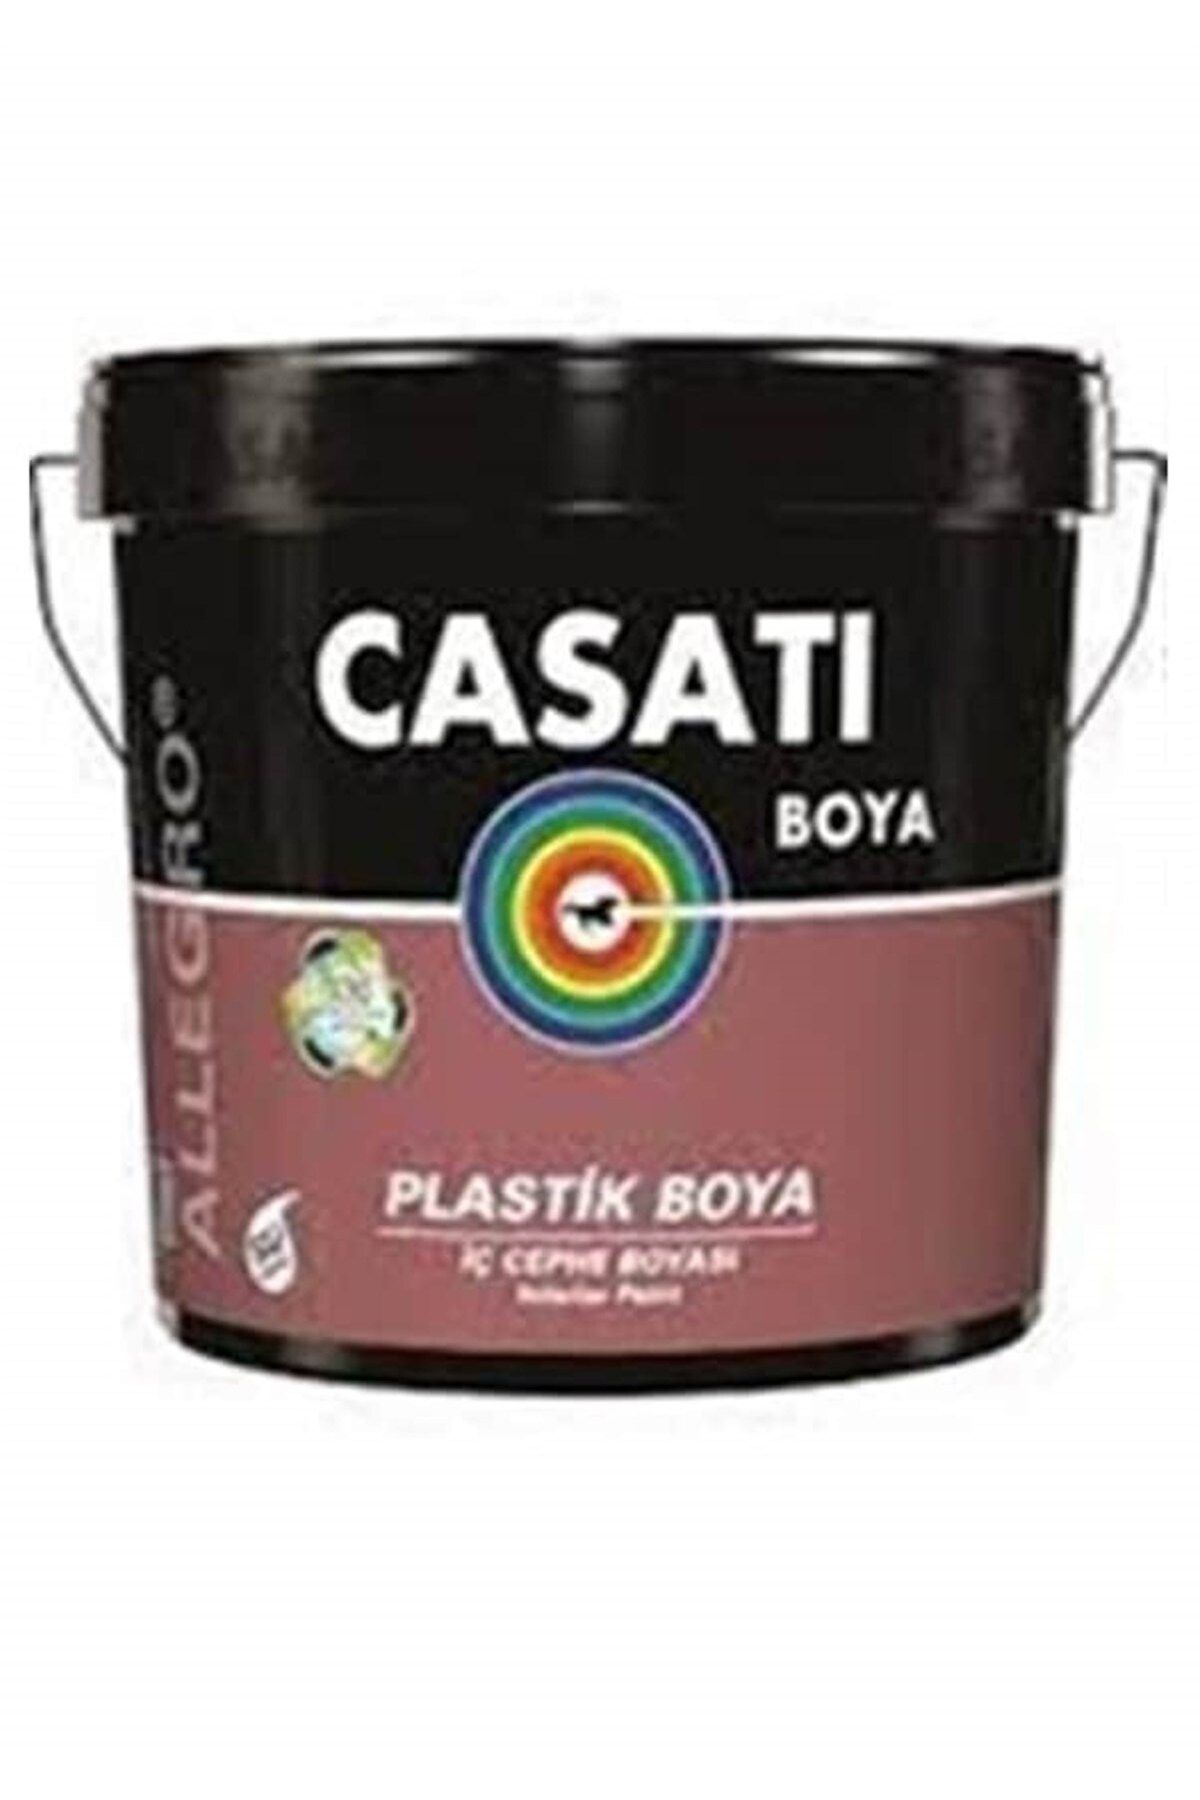 Casati Allegro Plastik Iç Cephe Duvar Boyası 3.5 Kg Tüm Renkler Mevcuttur